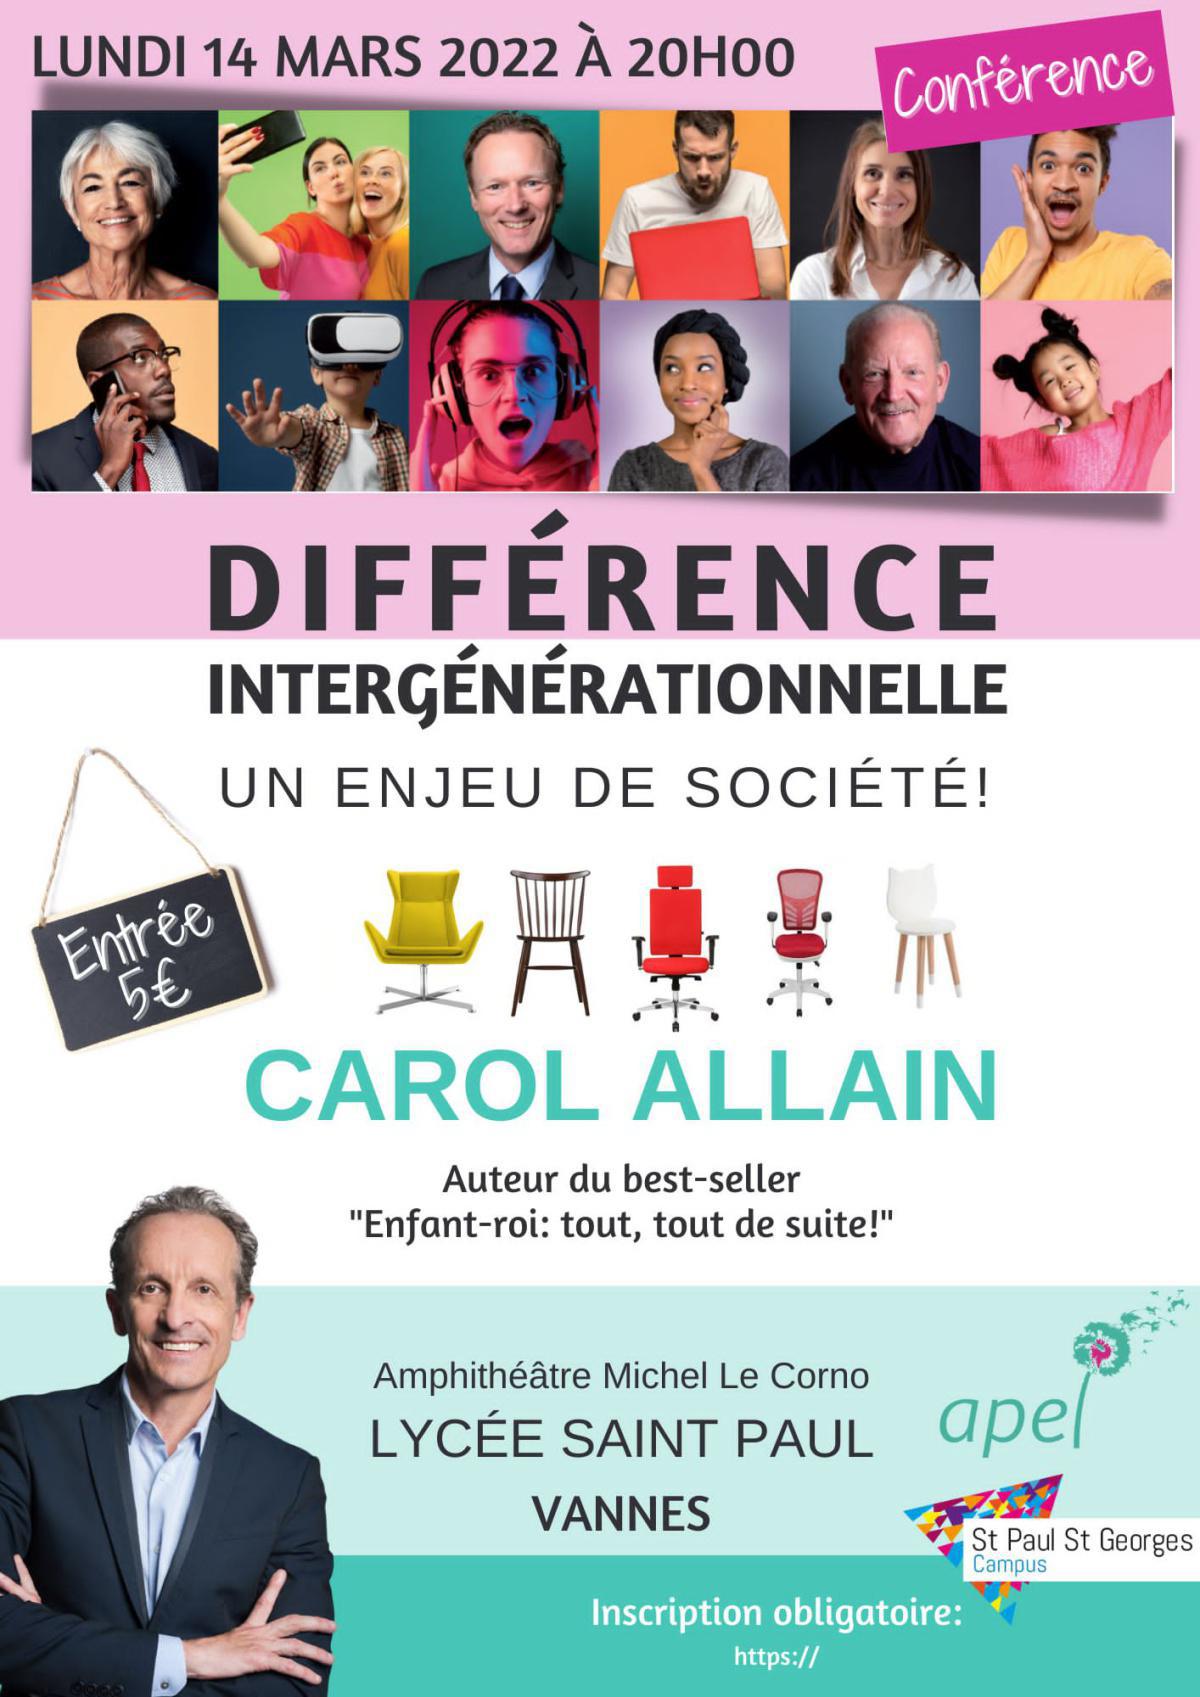 [CONFÉRENCE] Carol Allain et les différences intergénérationnelles